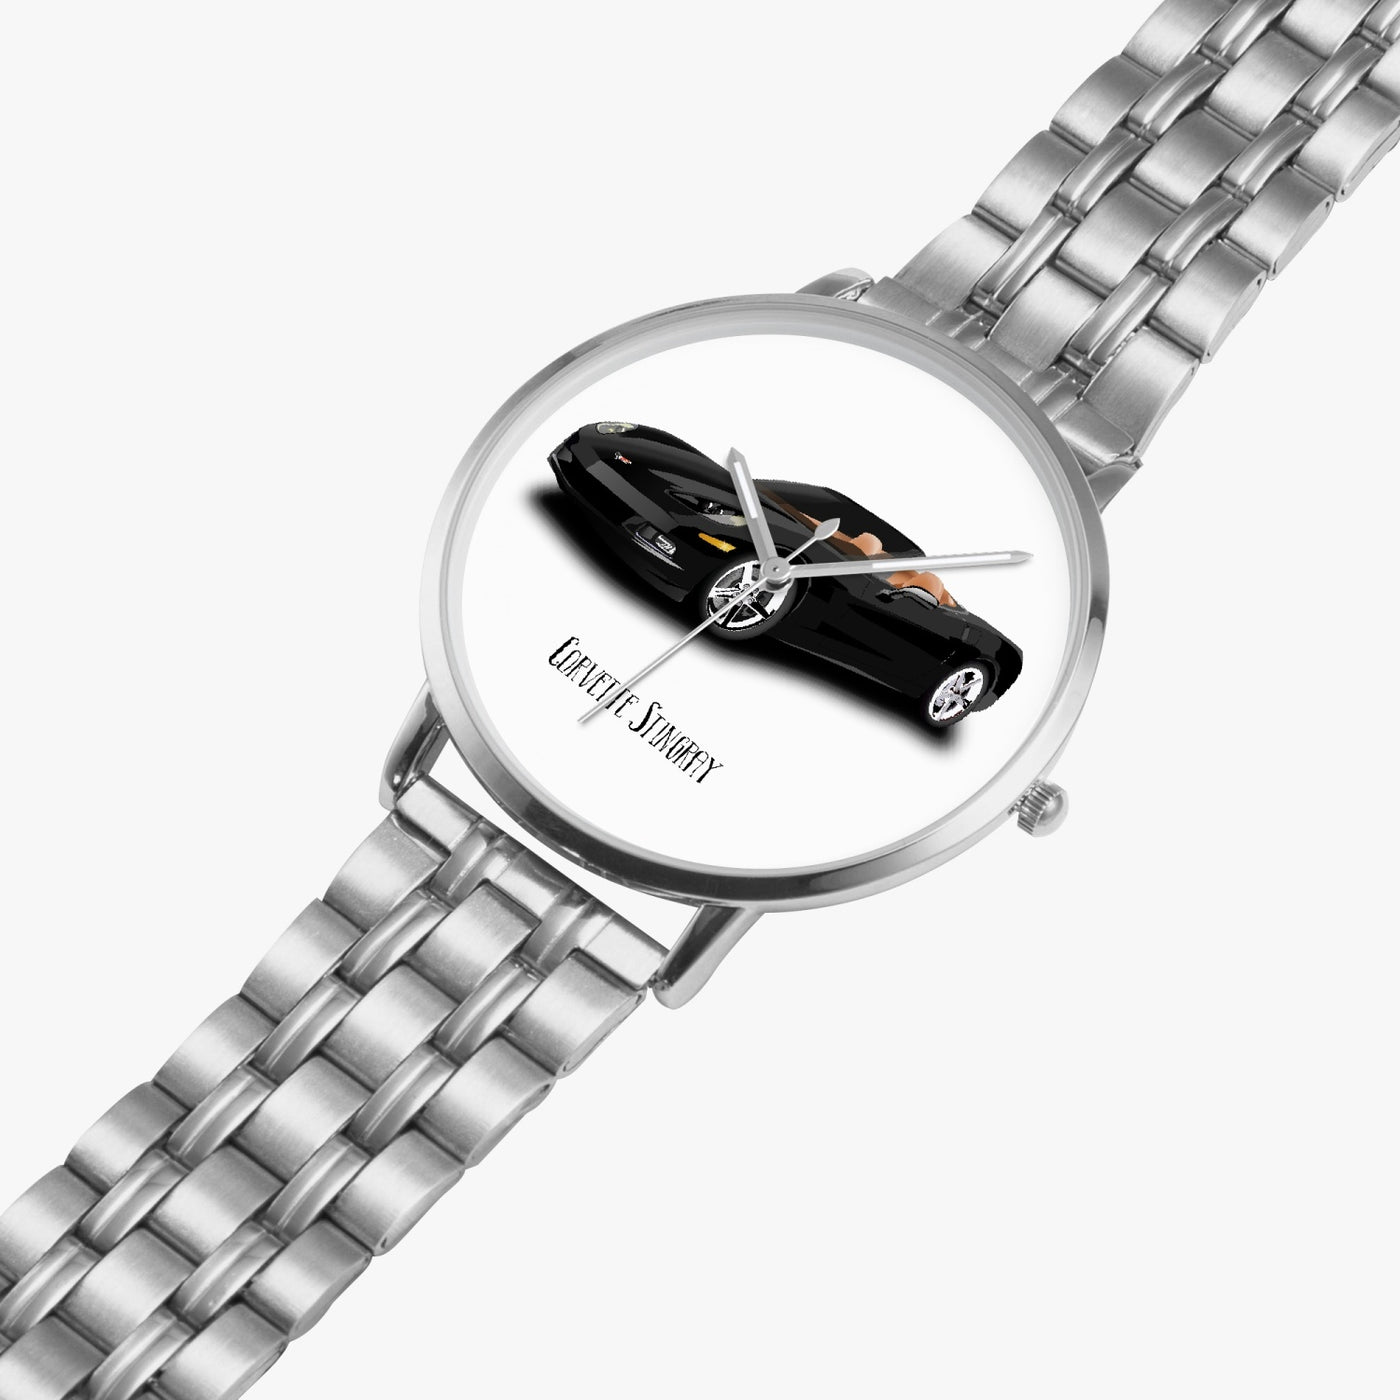 Corvette - Instafamous Steel Strap Quartz watch